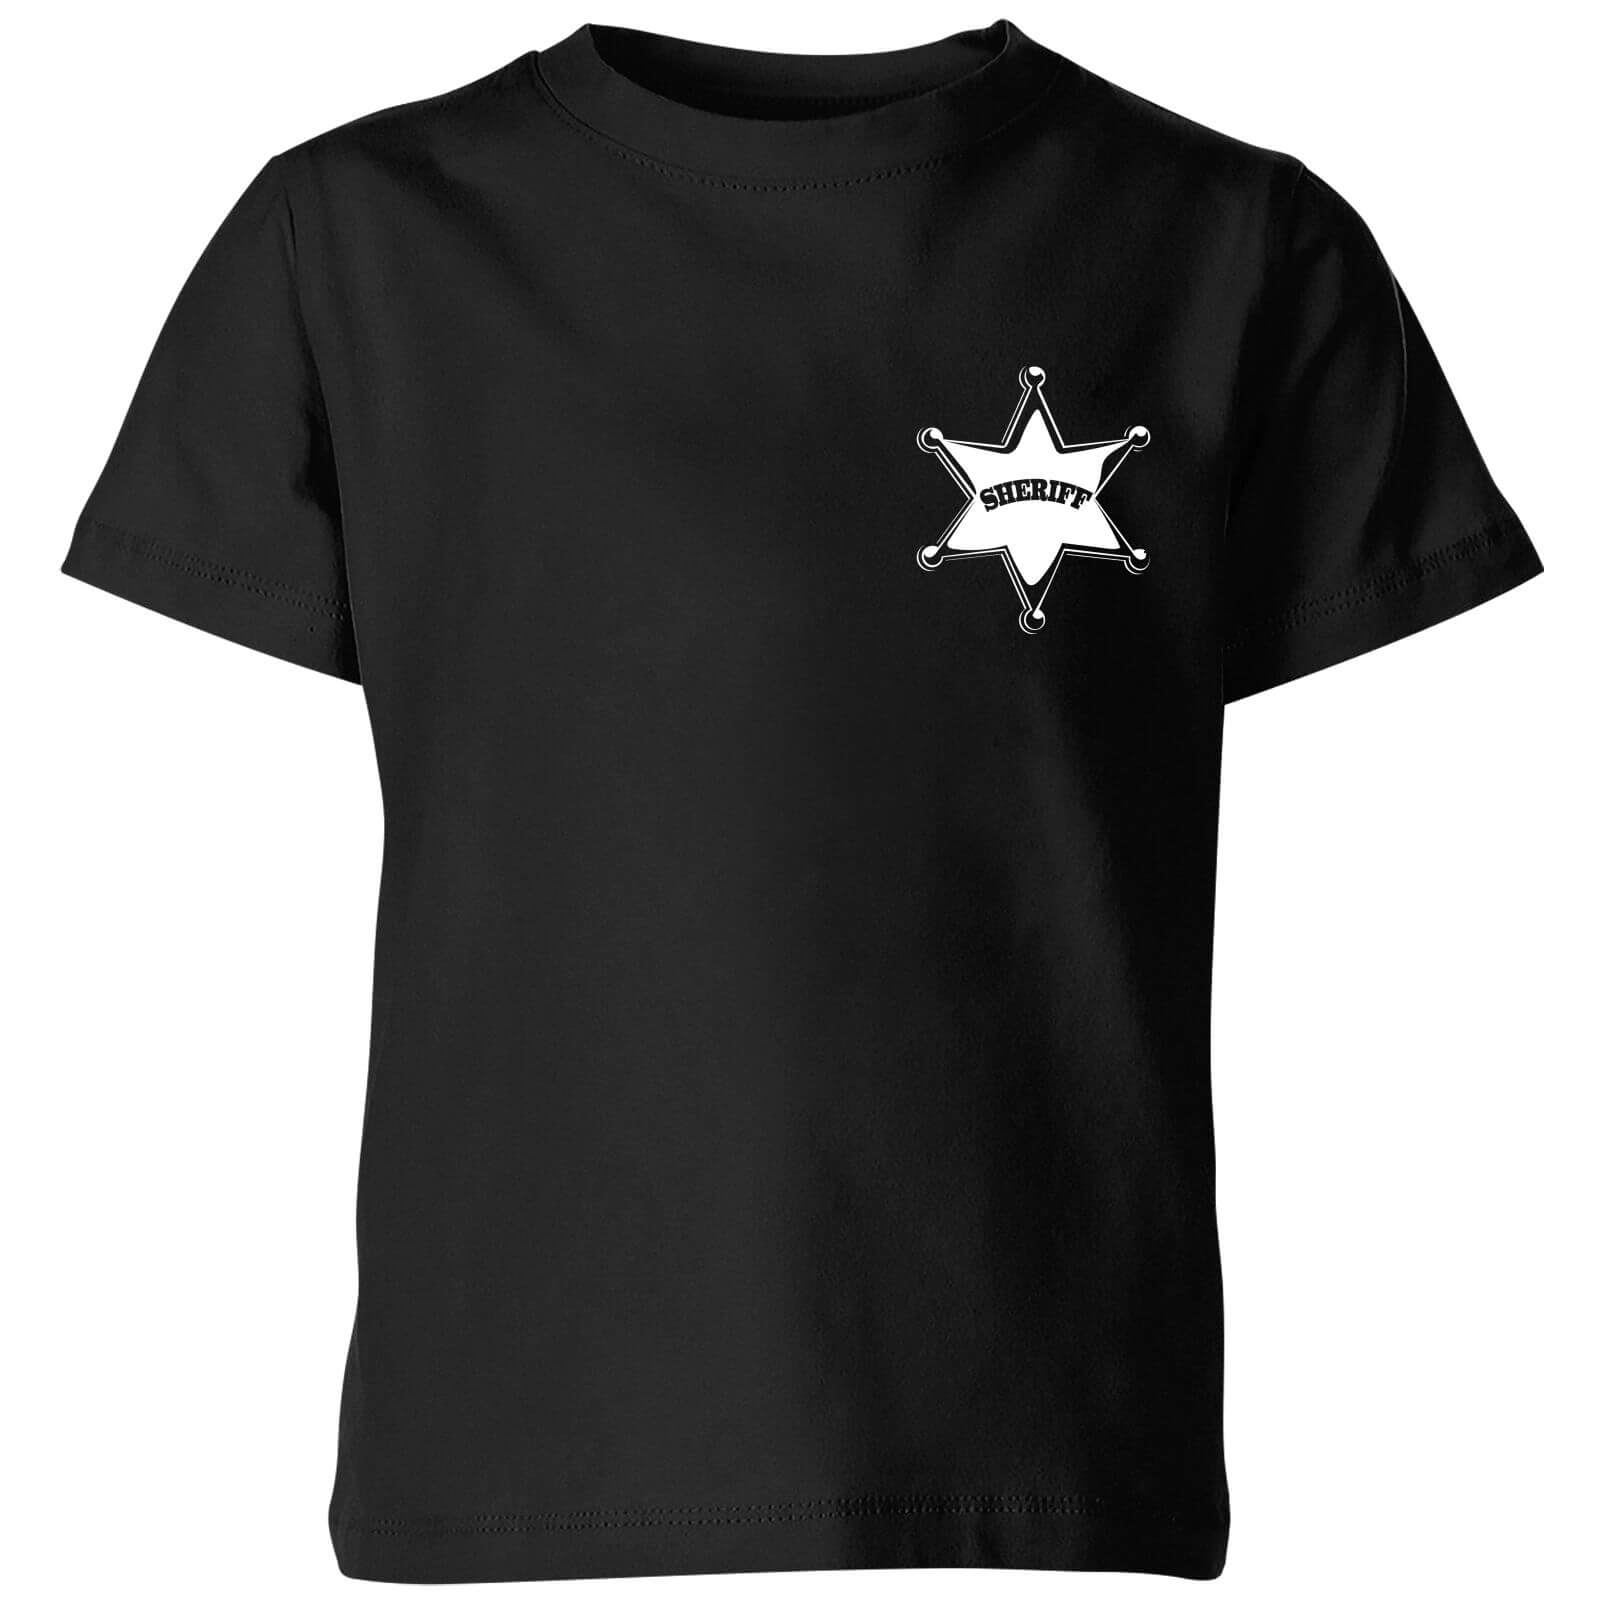 T-Shirt Enfant Sheriff Toy Story - Noir - 3-4 ans - Noir